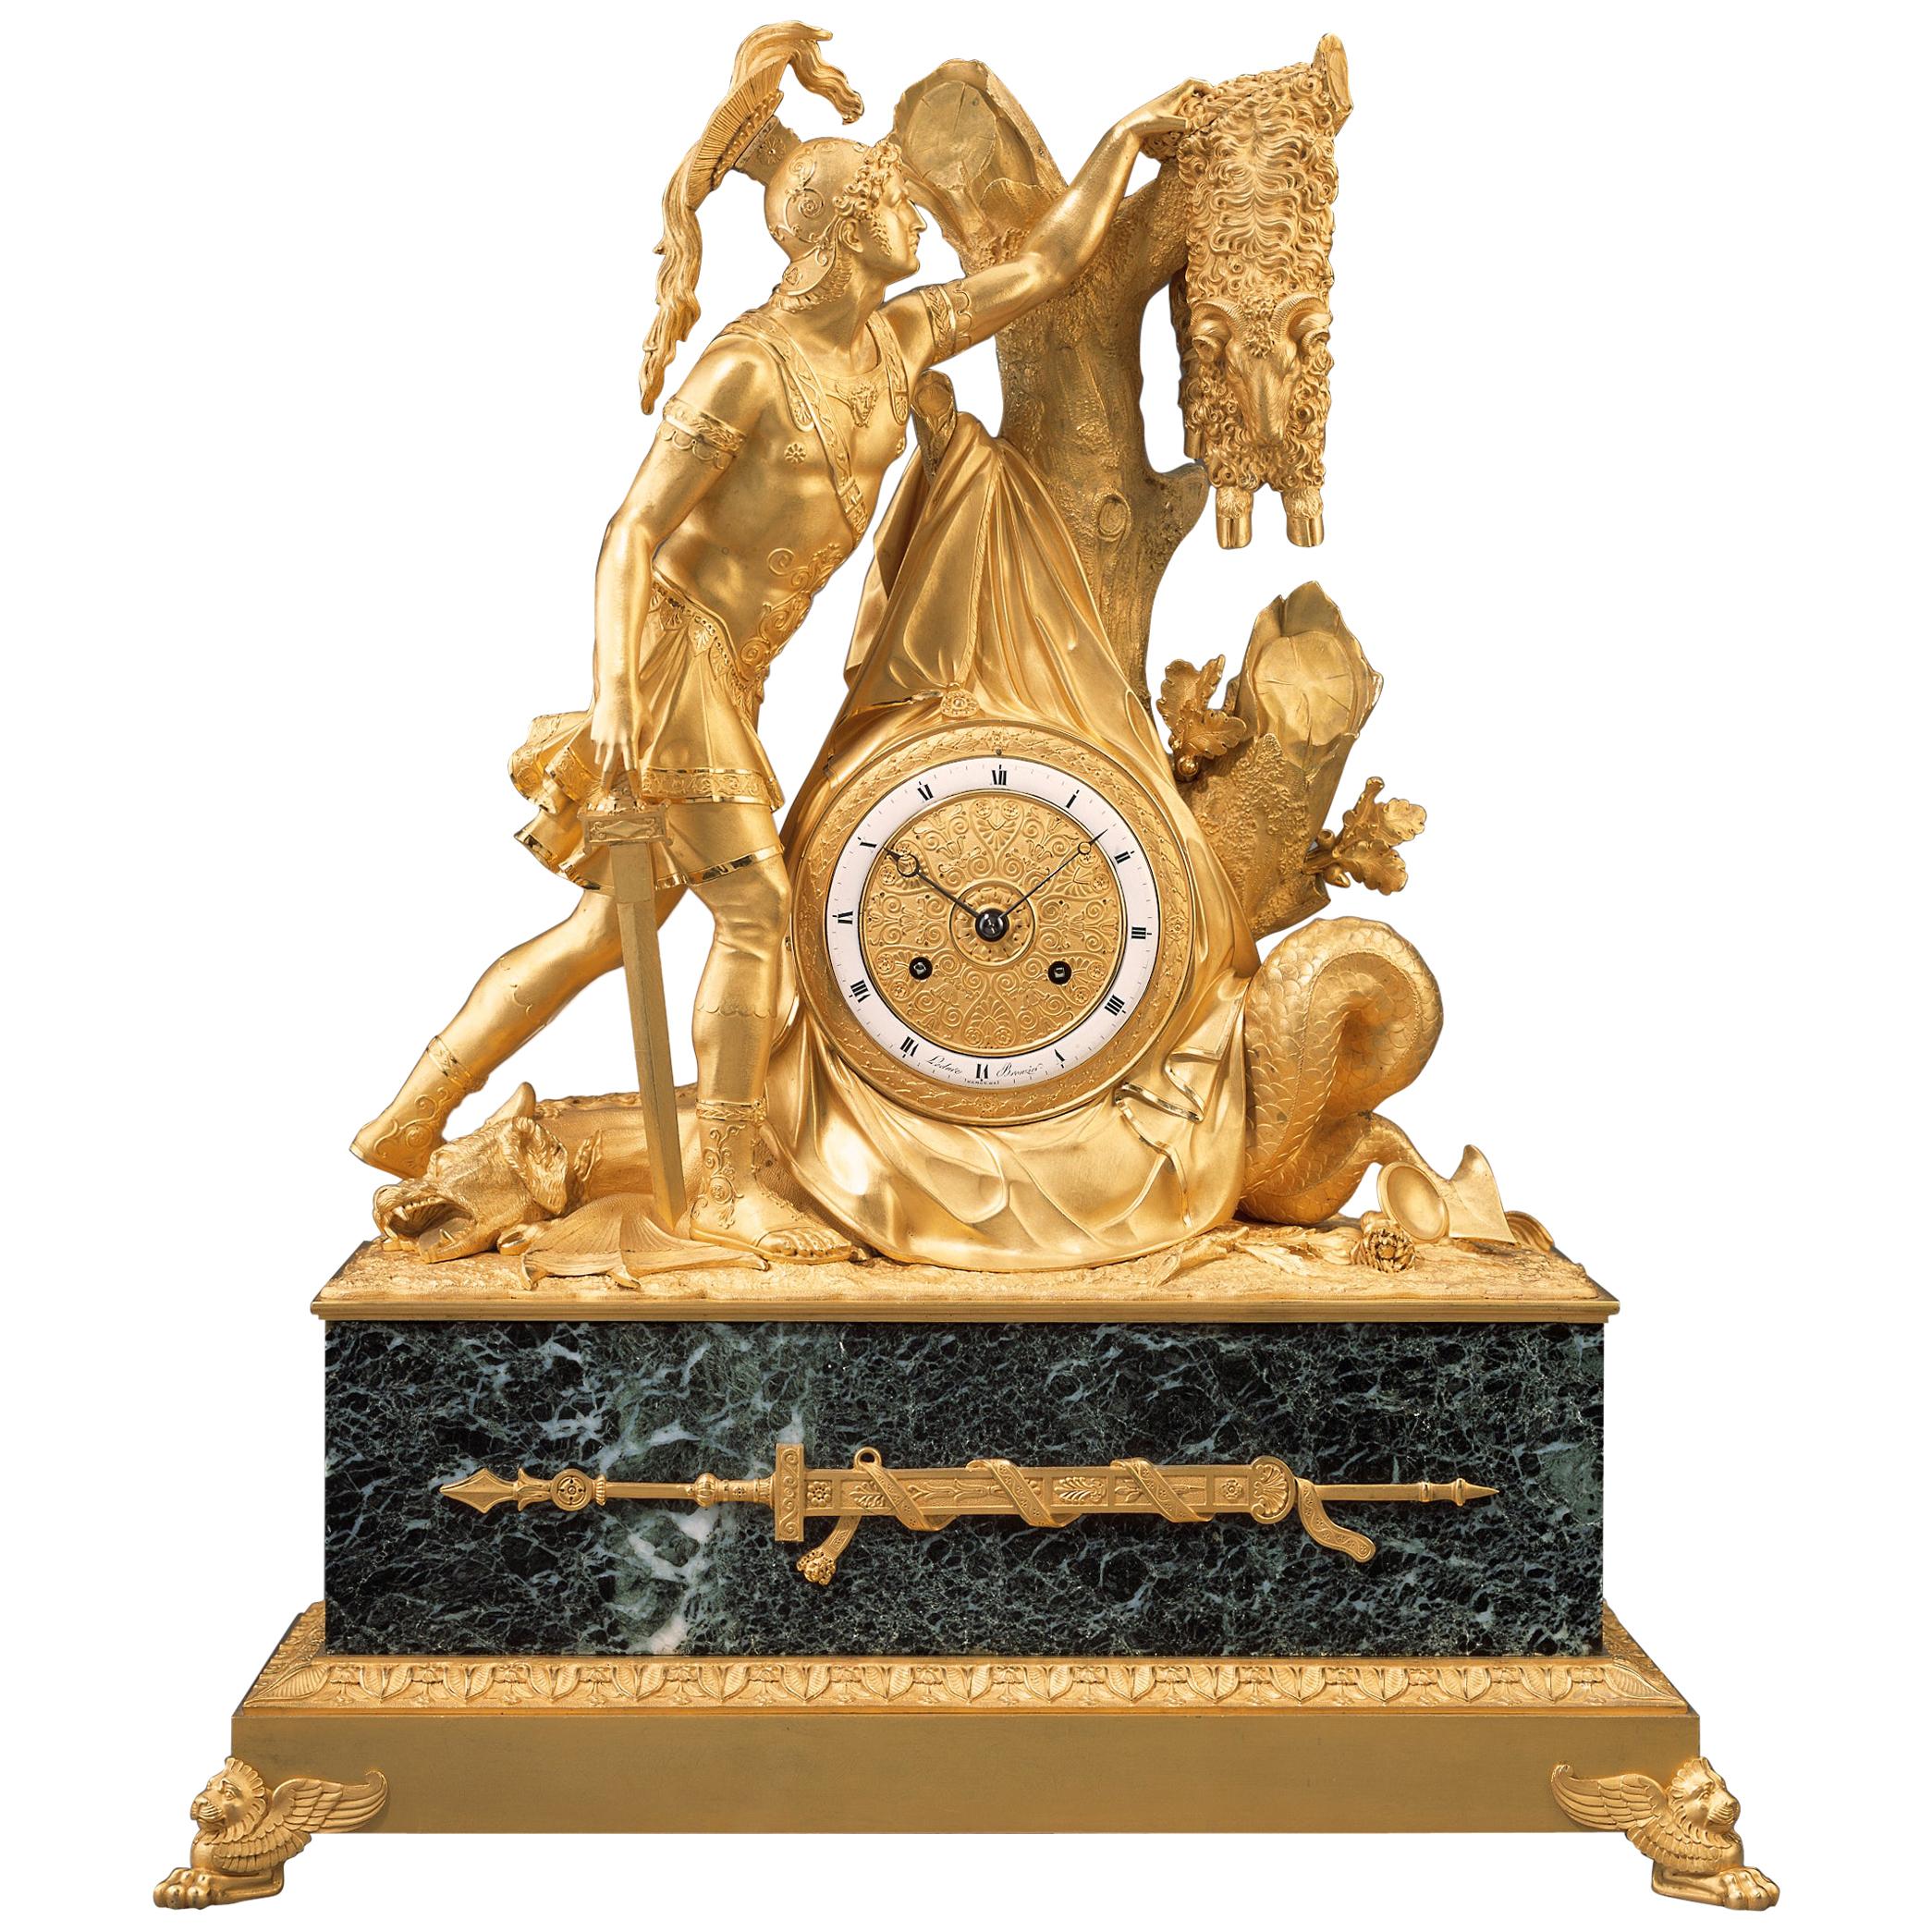 Rare Early 19th Century Empire Mantel Clock "Jason with the Golden Fleece"